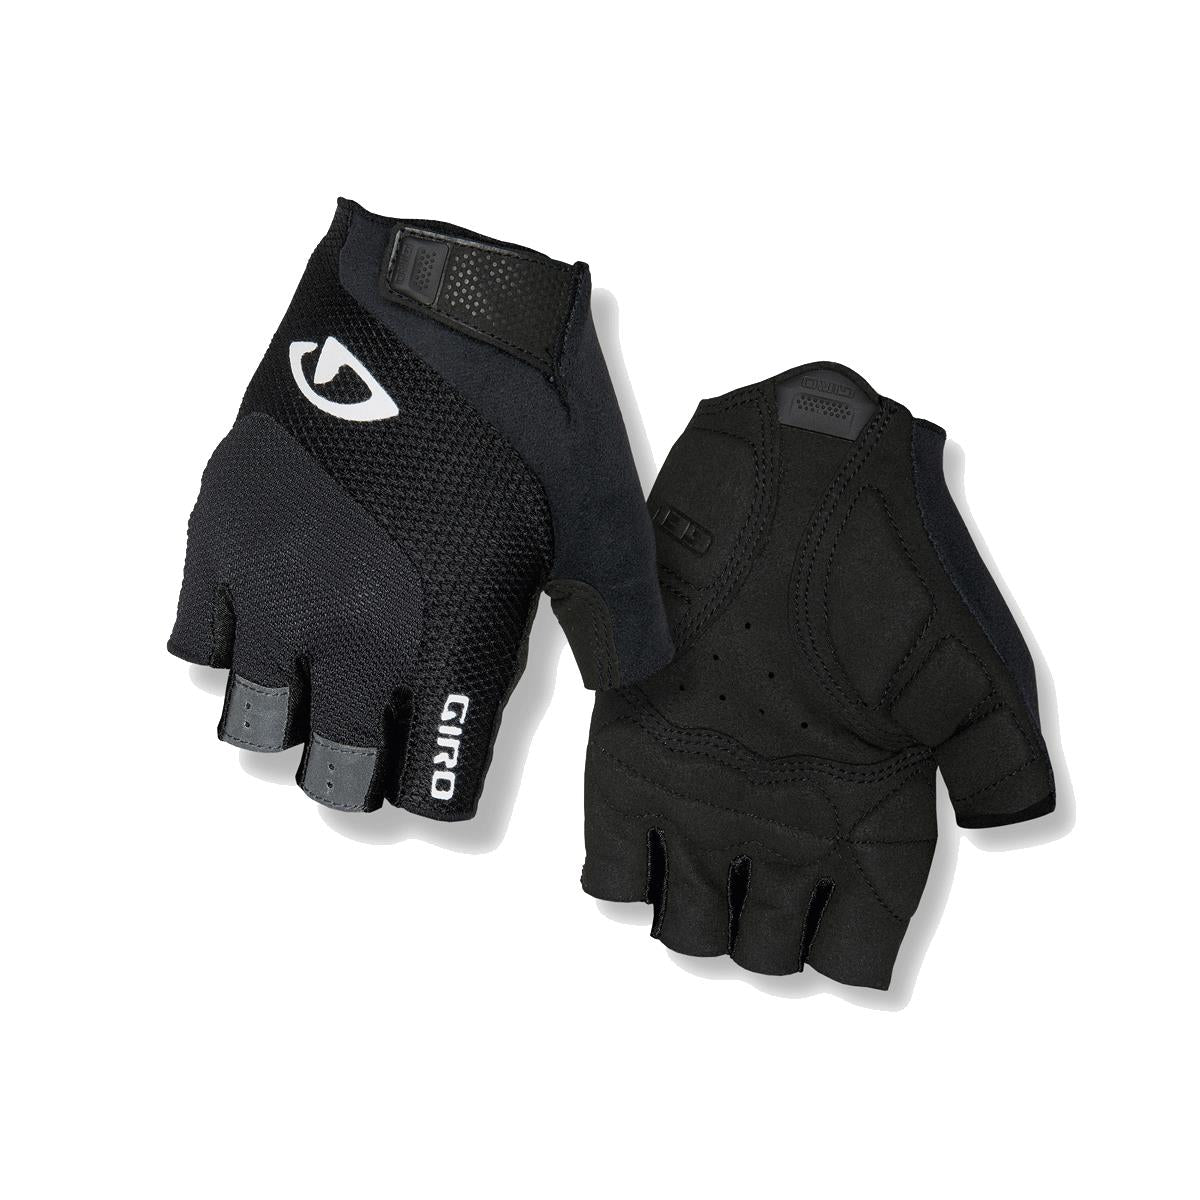 Giro Tessa Gel Women's Road Cycling Gloves